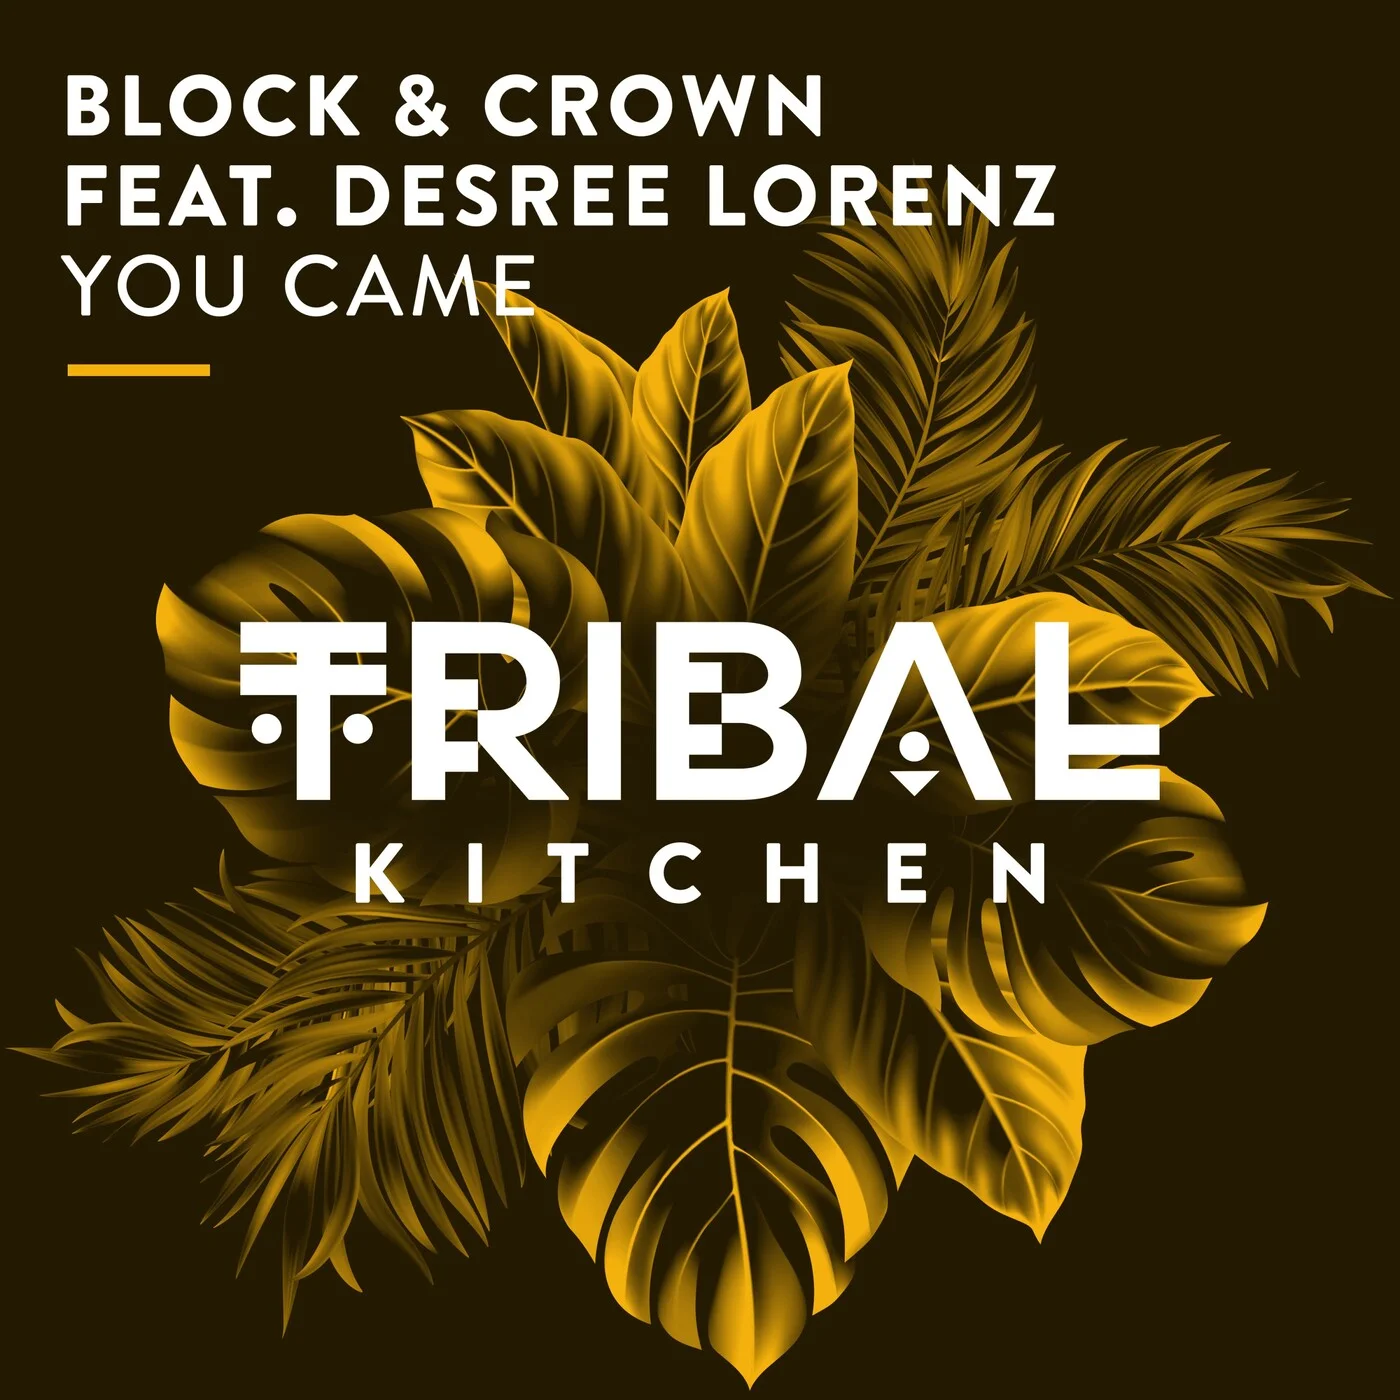 Block & Crown Desree Lorenz - You Came Feat. Desree Lorenz (Extended Mix)